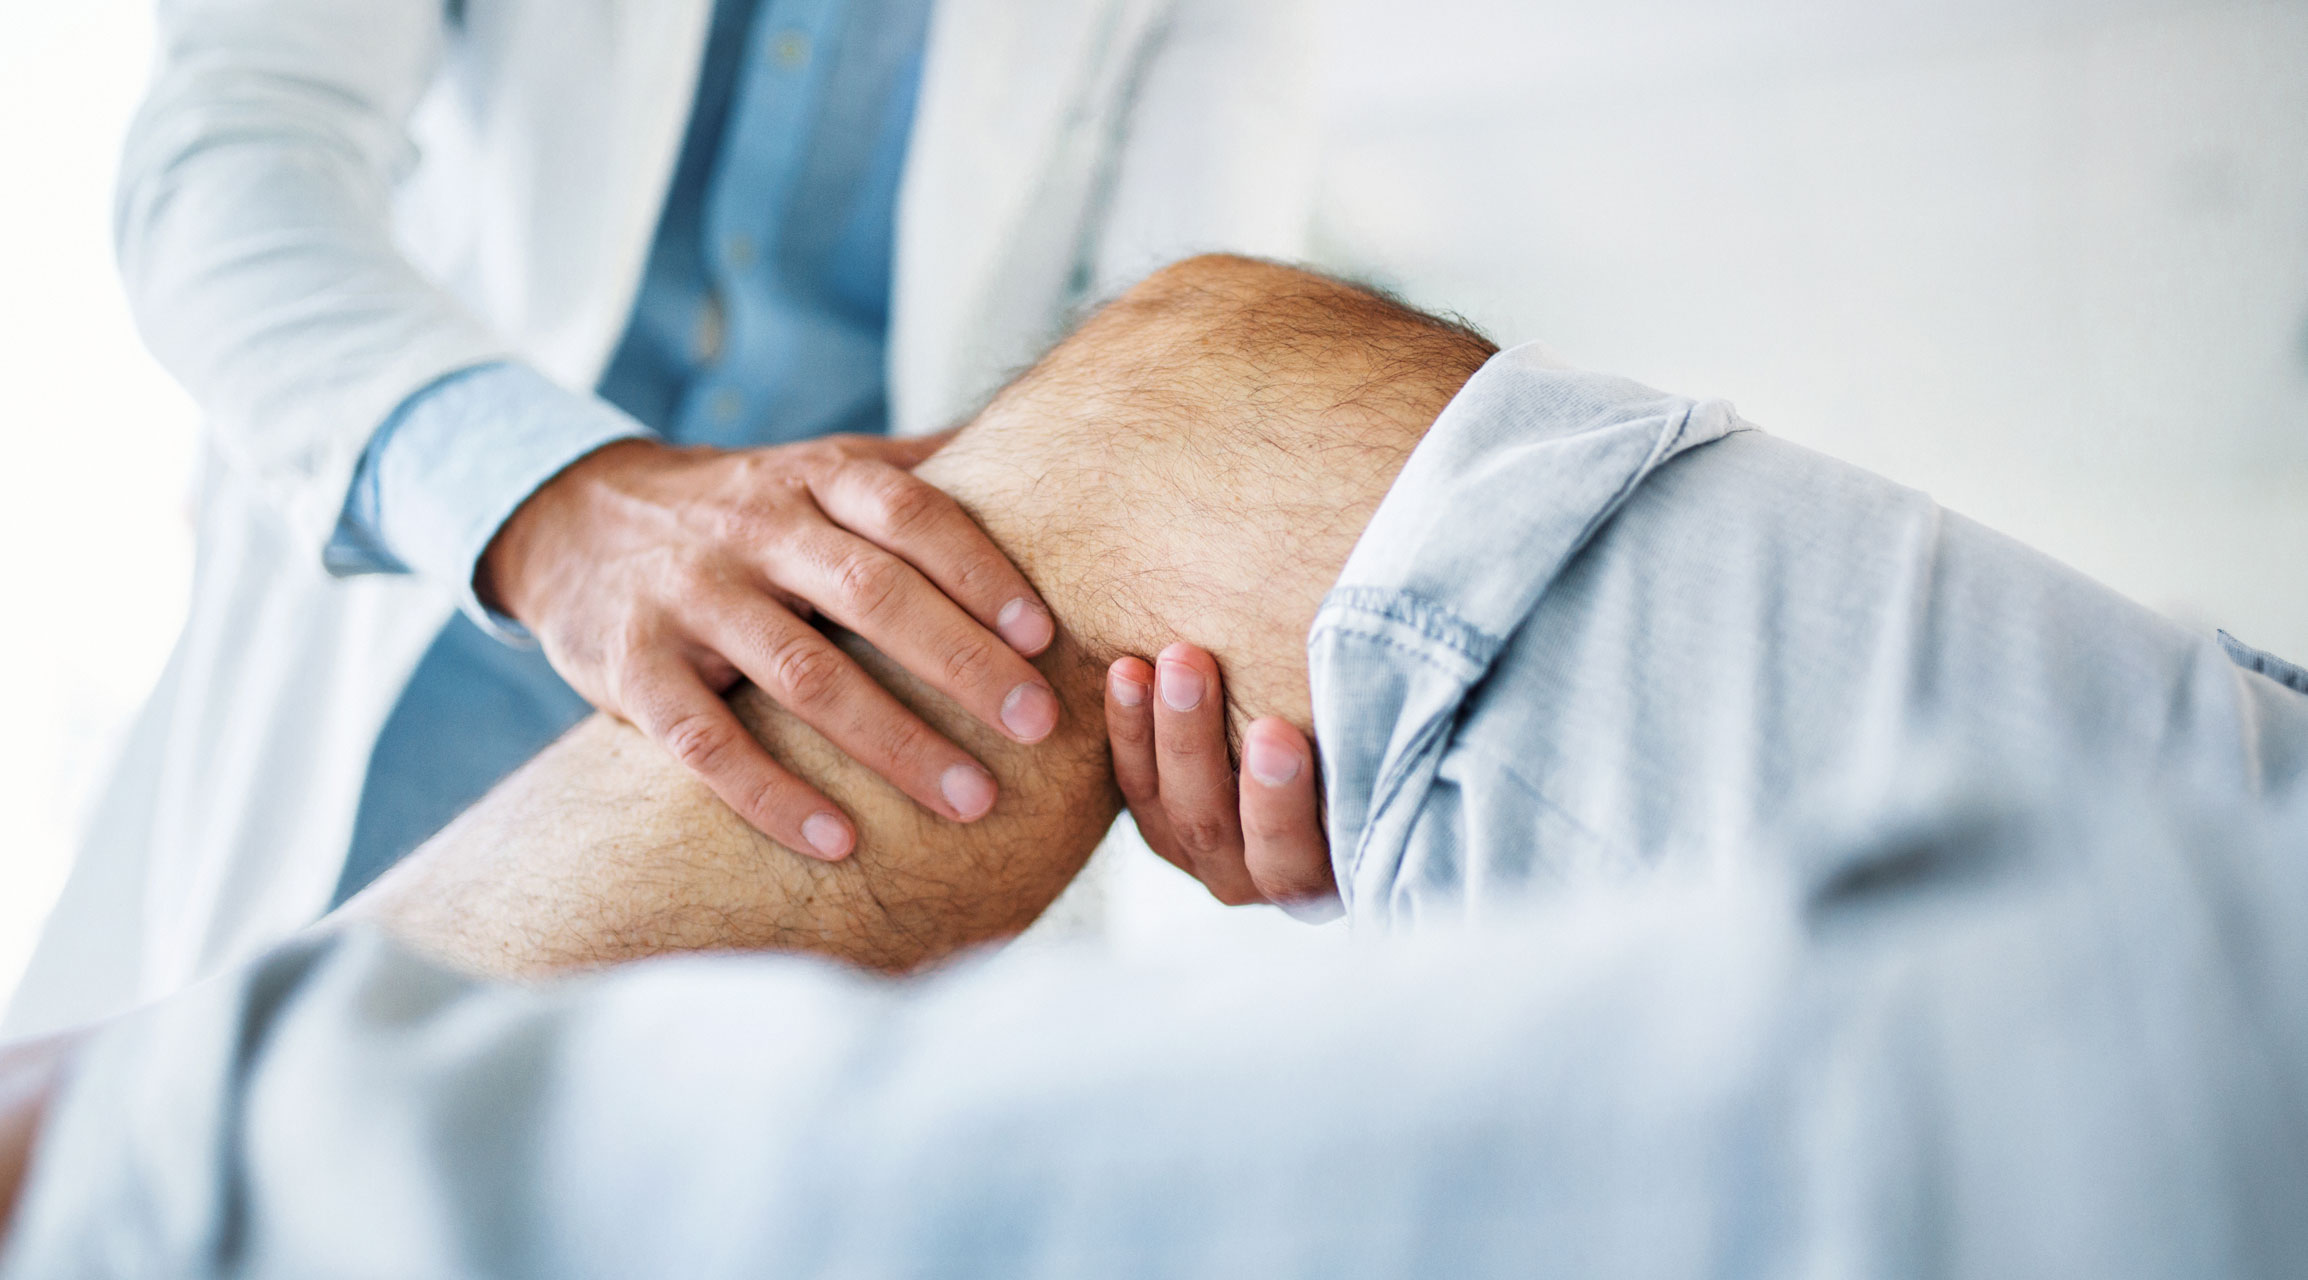 Le regole di Ottawa e di Pittsburgh riducono le radiografie non necessarie dopo un trauma al ginocchio?